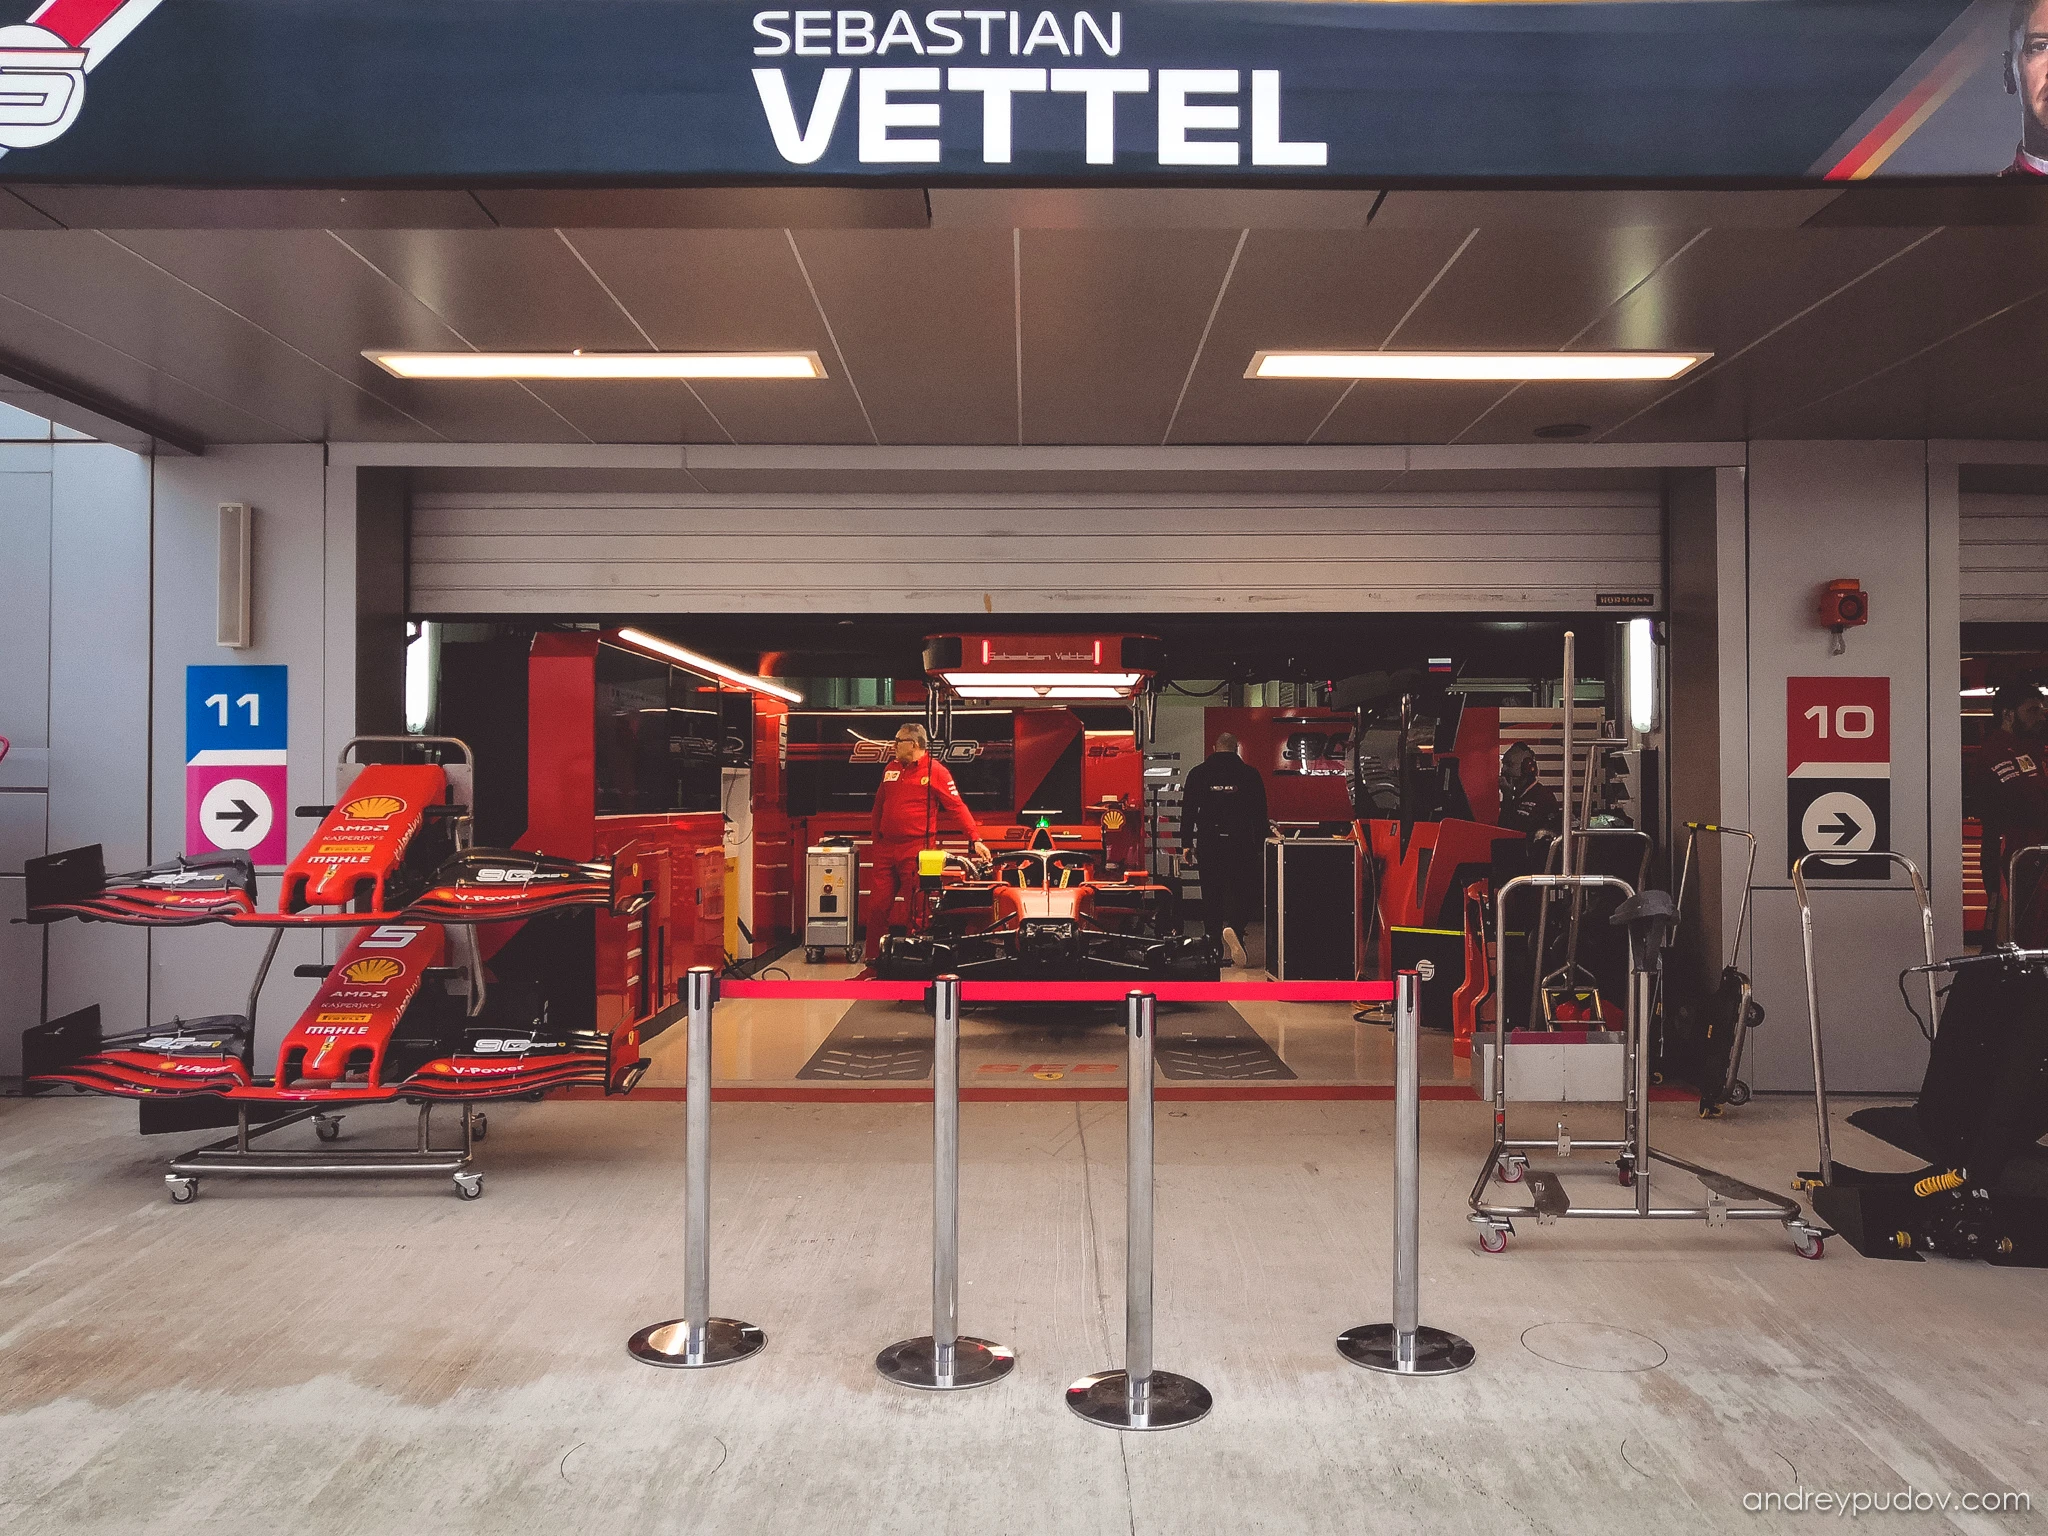 2019 Formula 1 Russian Grand Prix - The box of the Scuderia Ferrari